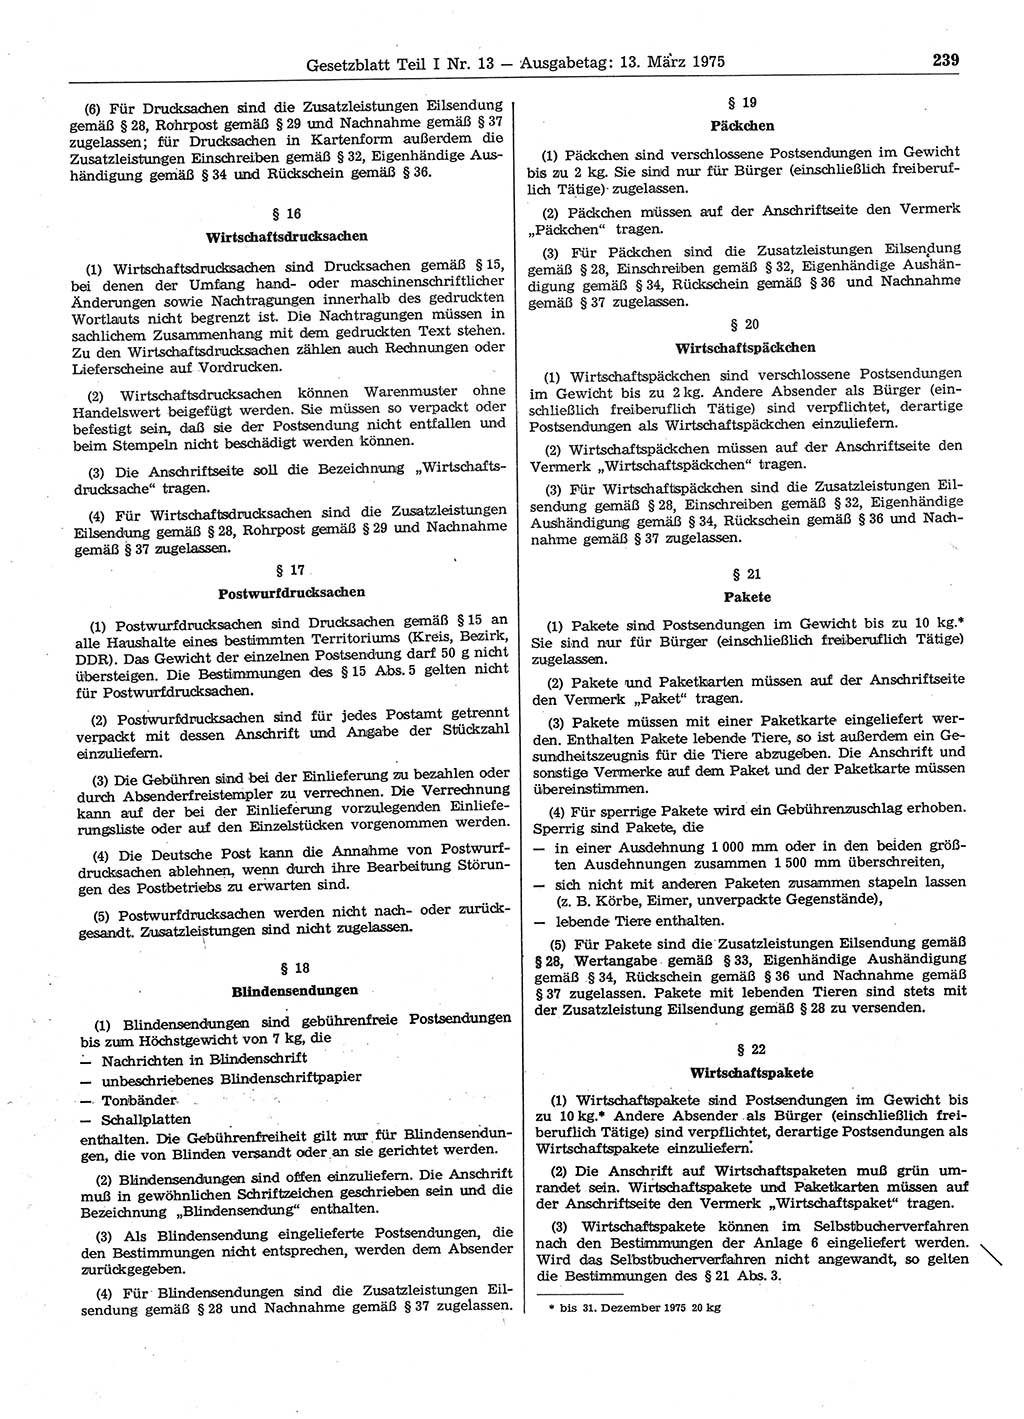 Gesetzblatt (GBl.) der Deutschen Demokratischen Republik (DDR) Teil Ⅰ 1975, Seite 239 (GBl. DDR Ⅰ 1975, S. 239)